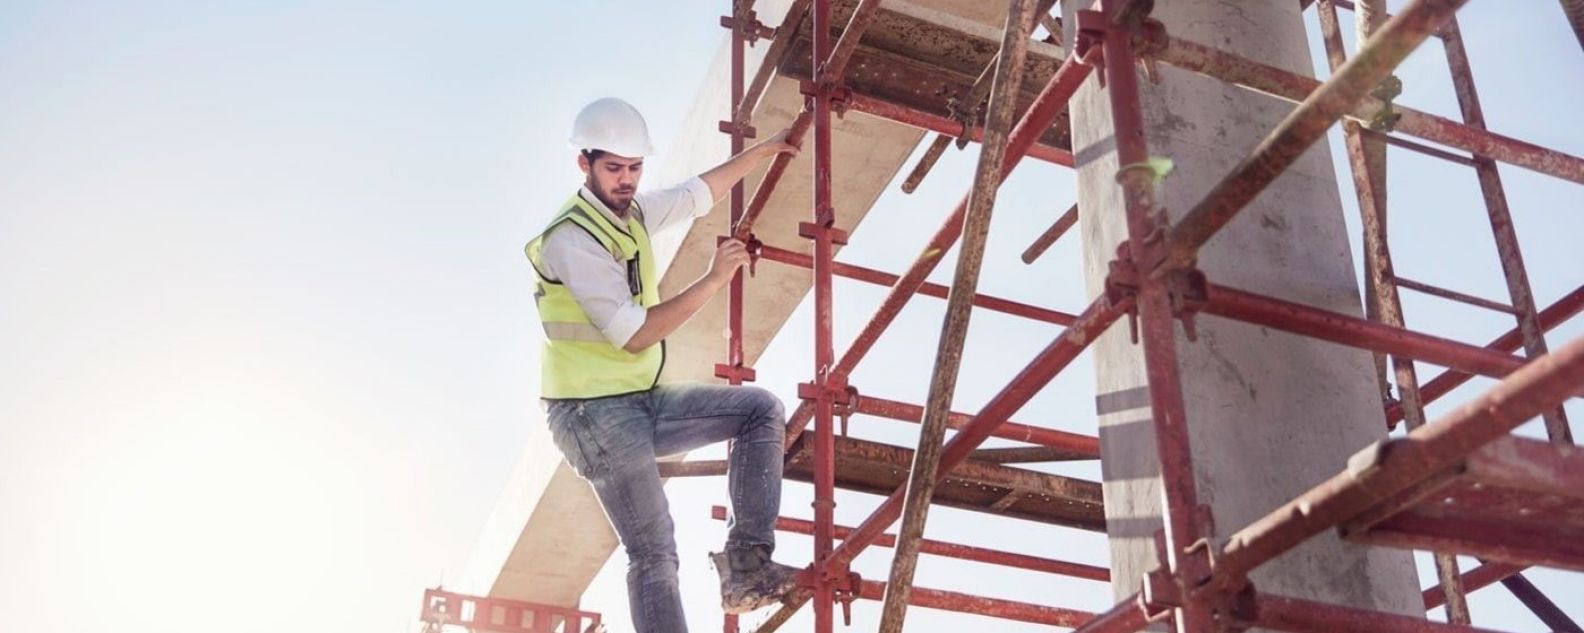 Worker on a scaffold